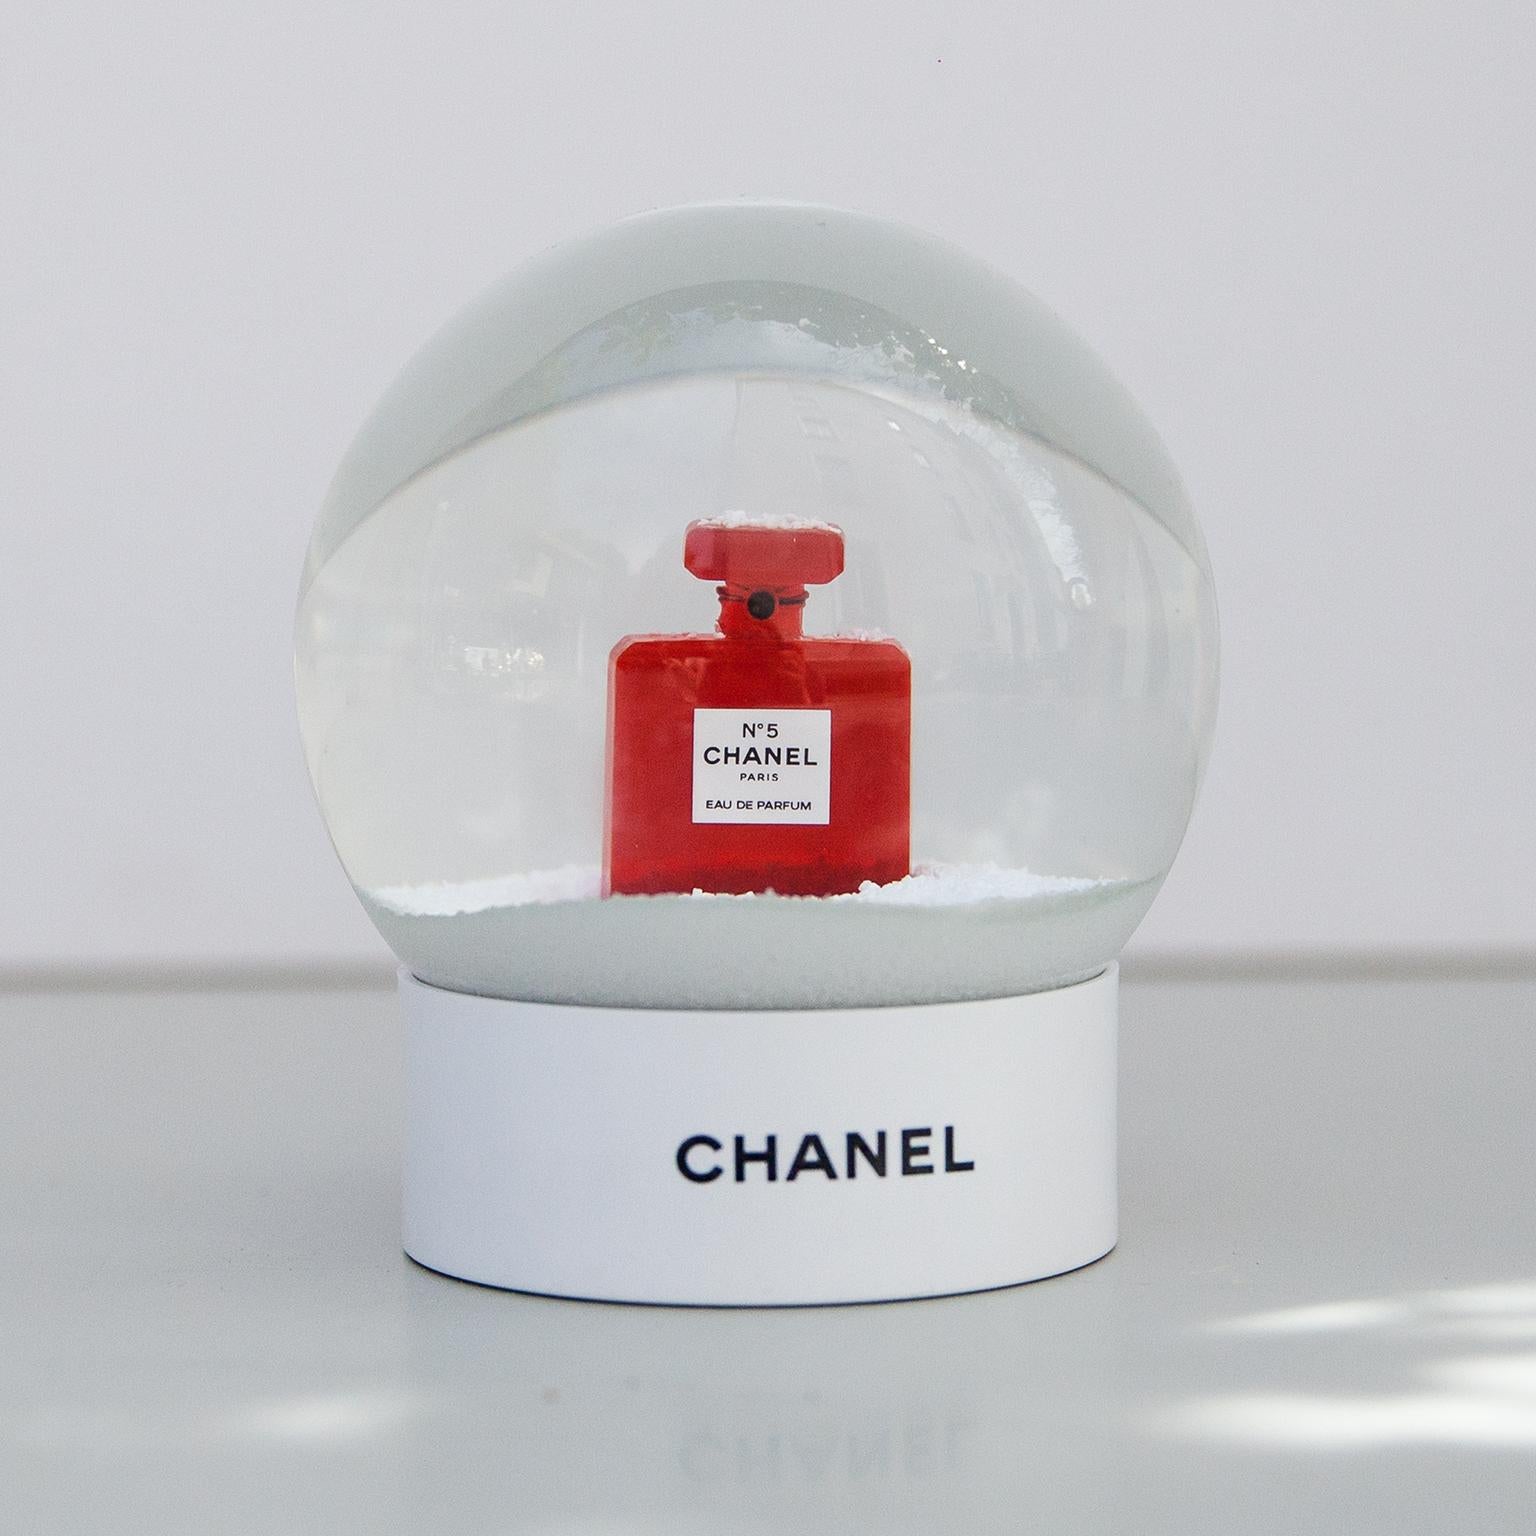 Seltene limitierte Auflage einer Chanel Schneekugel, die nur für VIP-Kunden in ausgezeichnetem Zustand und mit der Originalschachtel sind.
Es zeigt den ikonischen Flakon des Chanel-Parfüms Nr. 5, ein dekoratives Muss für Chanel-Liebhaber.
